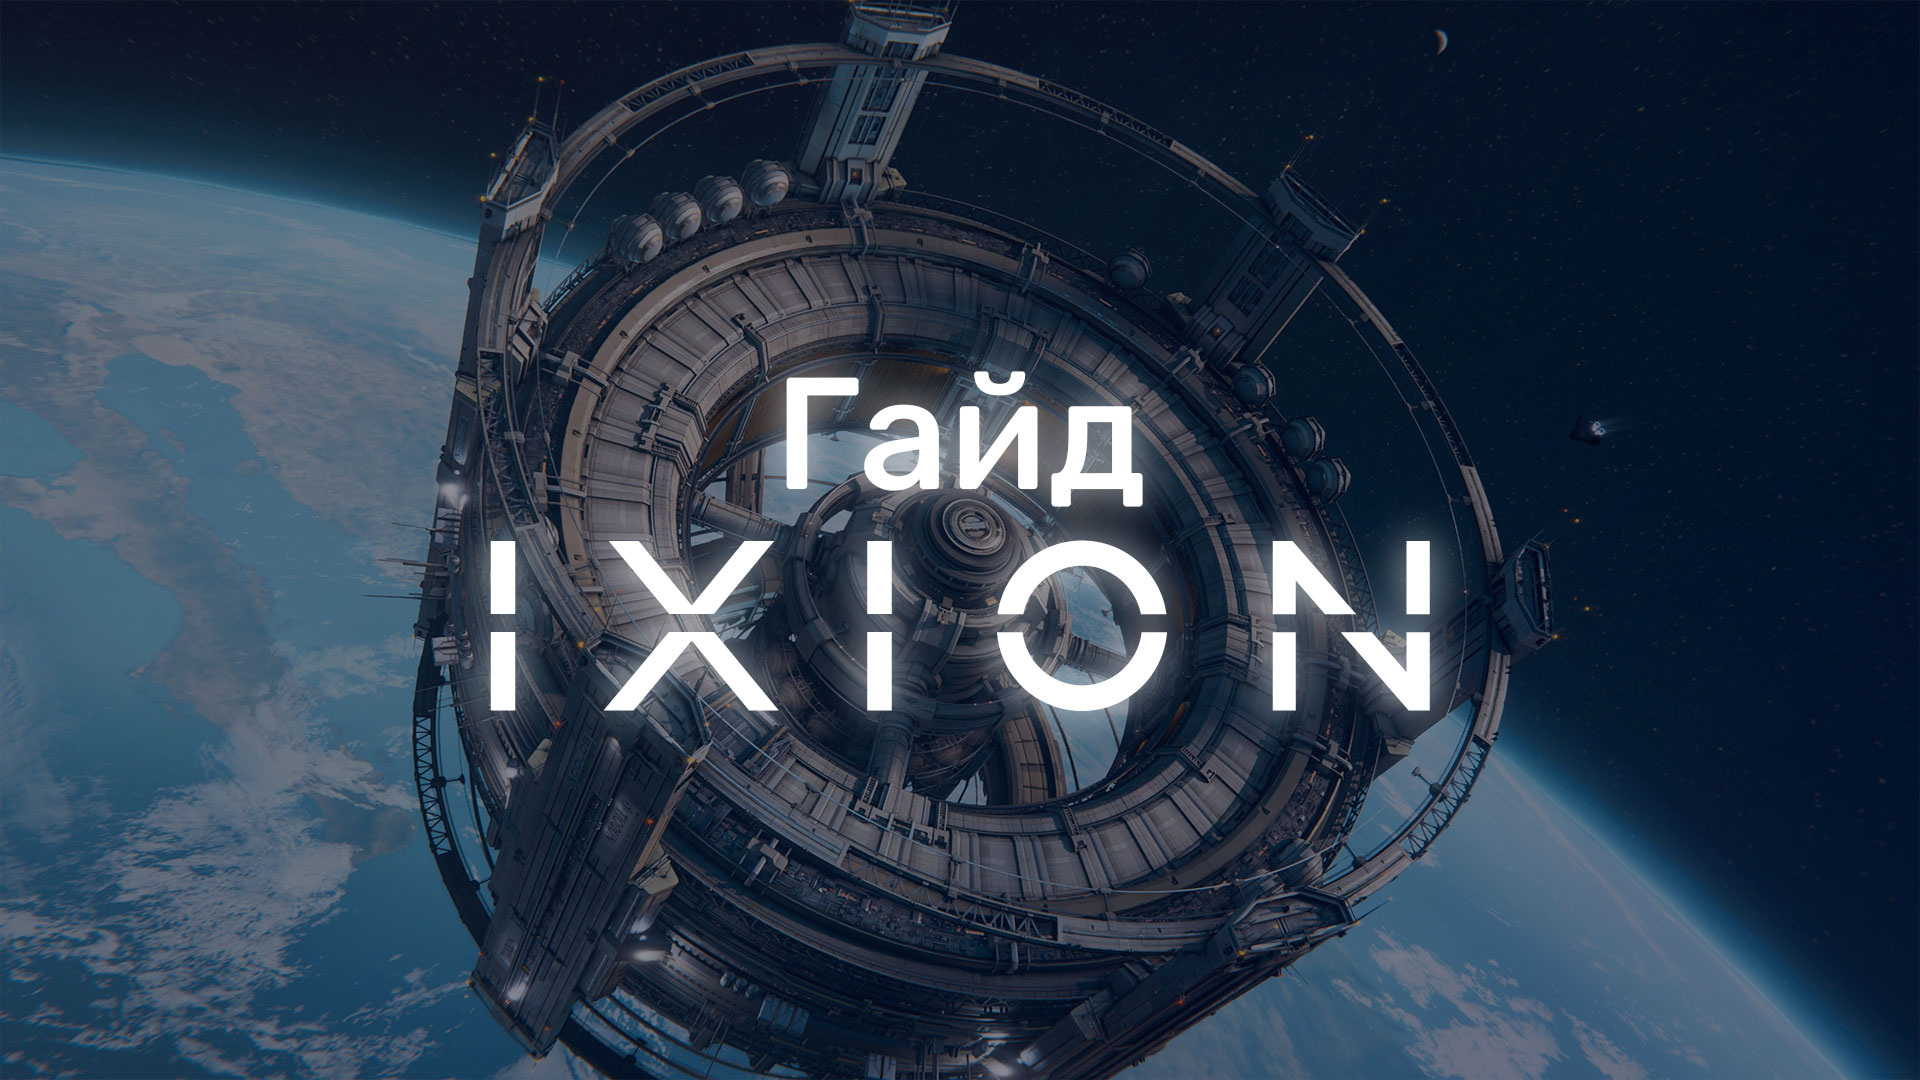 Совсем недавно Bulwark Studios выпустили космическую стратегию Ixion, которая может показаться слишком сложной, поэтому возникает вопрос «Как начать играть в Ixion?».